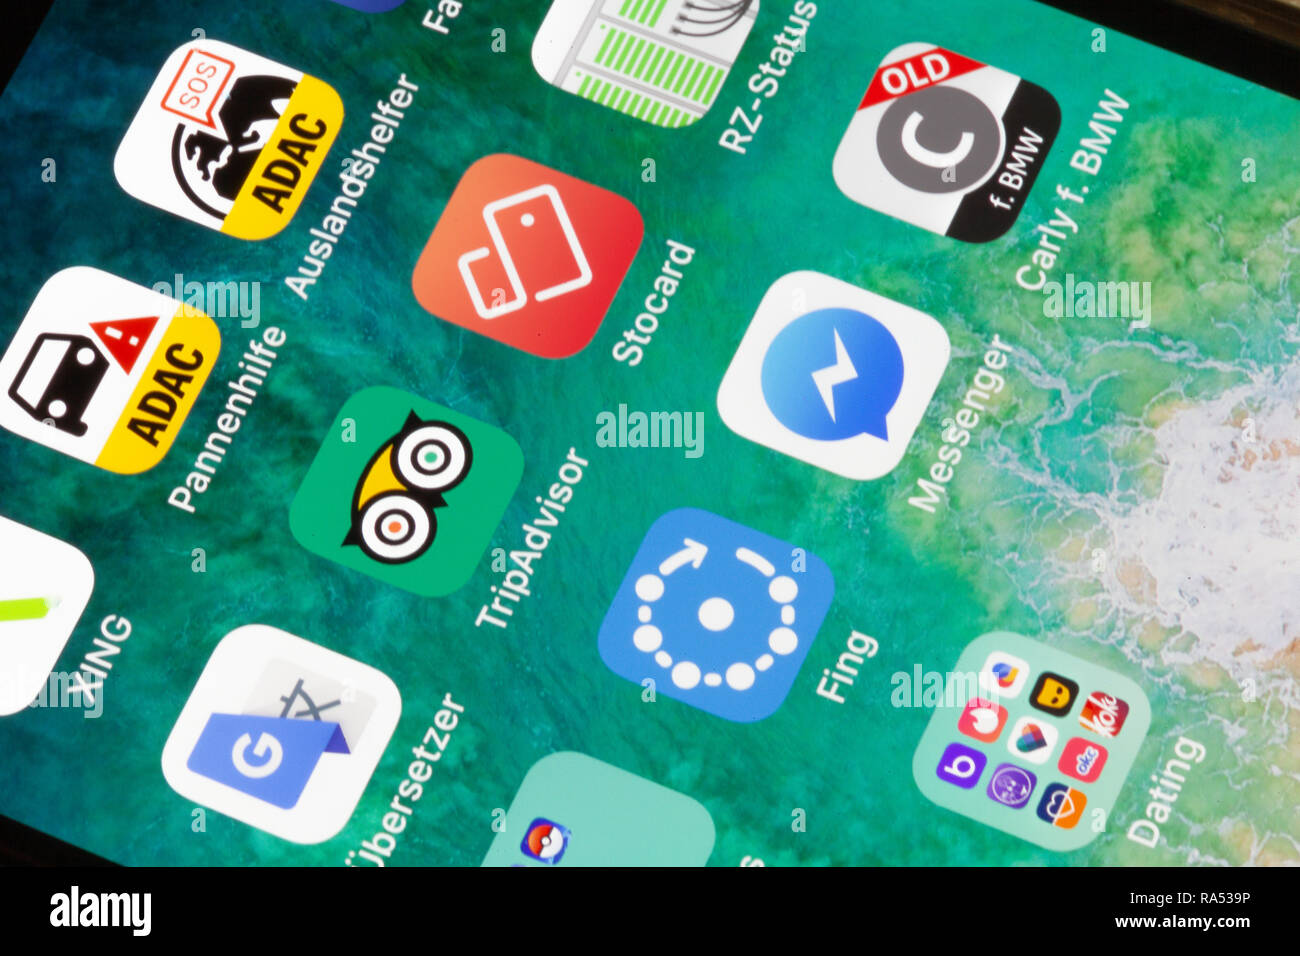 Nuremberg, Allemagne - 29 décembre 2018 : une photo en gros plan de l'écran de l'iPhone d'Apple avec des icônes Tripadvisor, Stocard, ADAC un d'autres apps. Banque D'Images